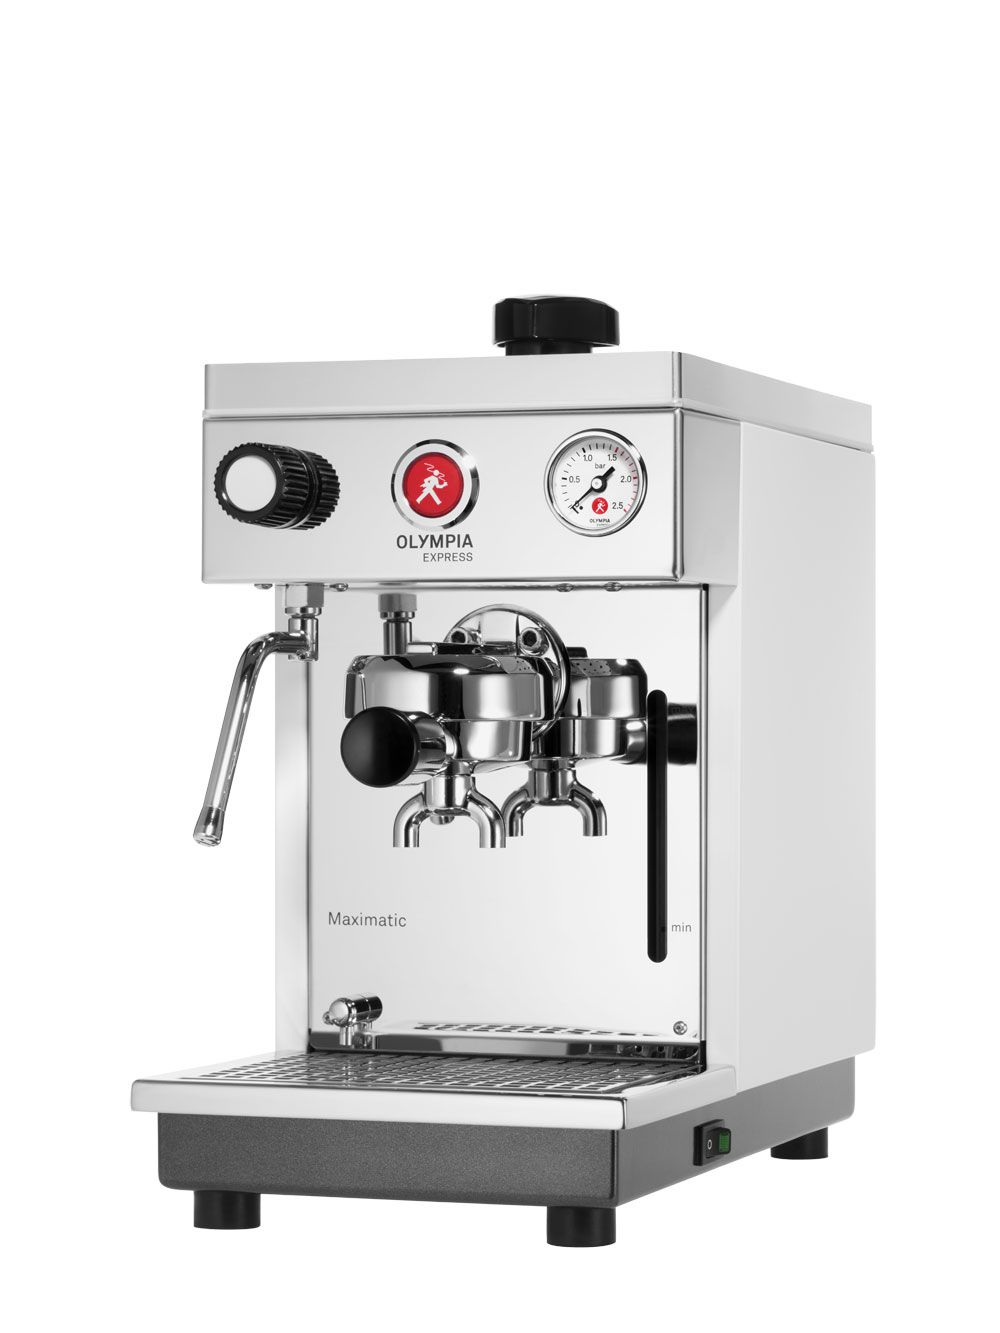 Machine à espresso Olympia Express Maximatic Anthracite